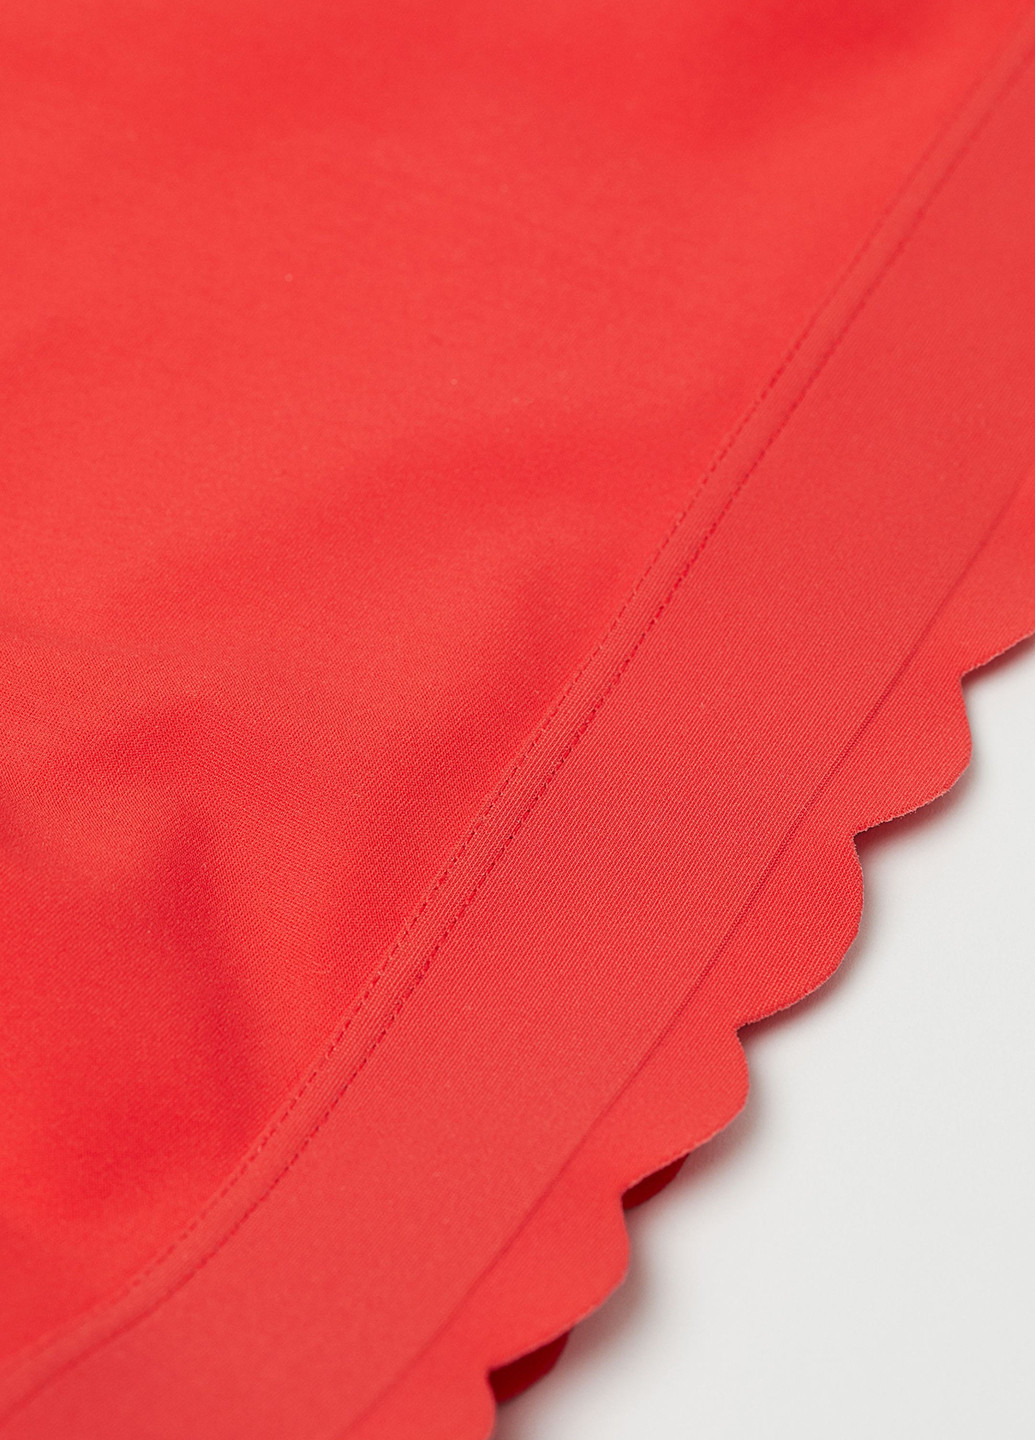 Купальный лиф H&M топ однотонный красный пляжный полиамид